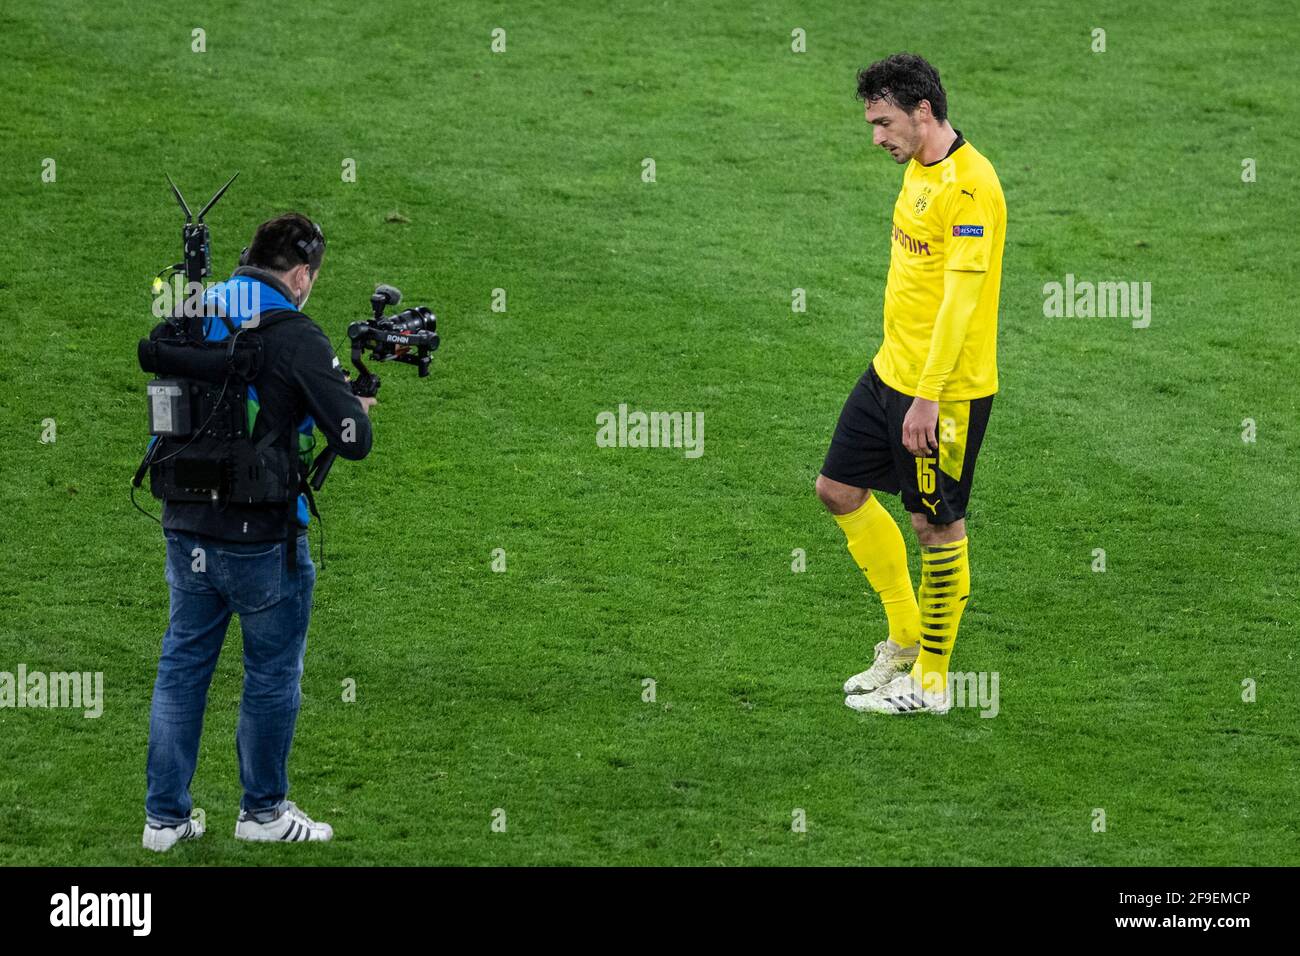 Dortmund, Signal Iduna Park, 14.04.21: Mats Hummels (BVB) enttäuscht im Spiel  Champions league Borussia Dortmund vs. Manchester City. Foto: pressefot  Stock Photo - Alamy